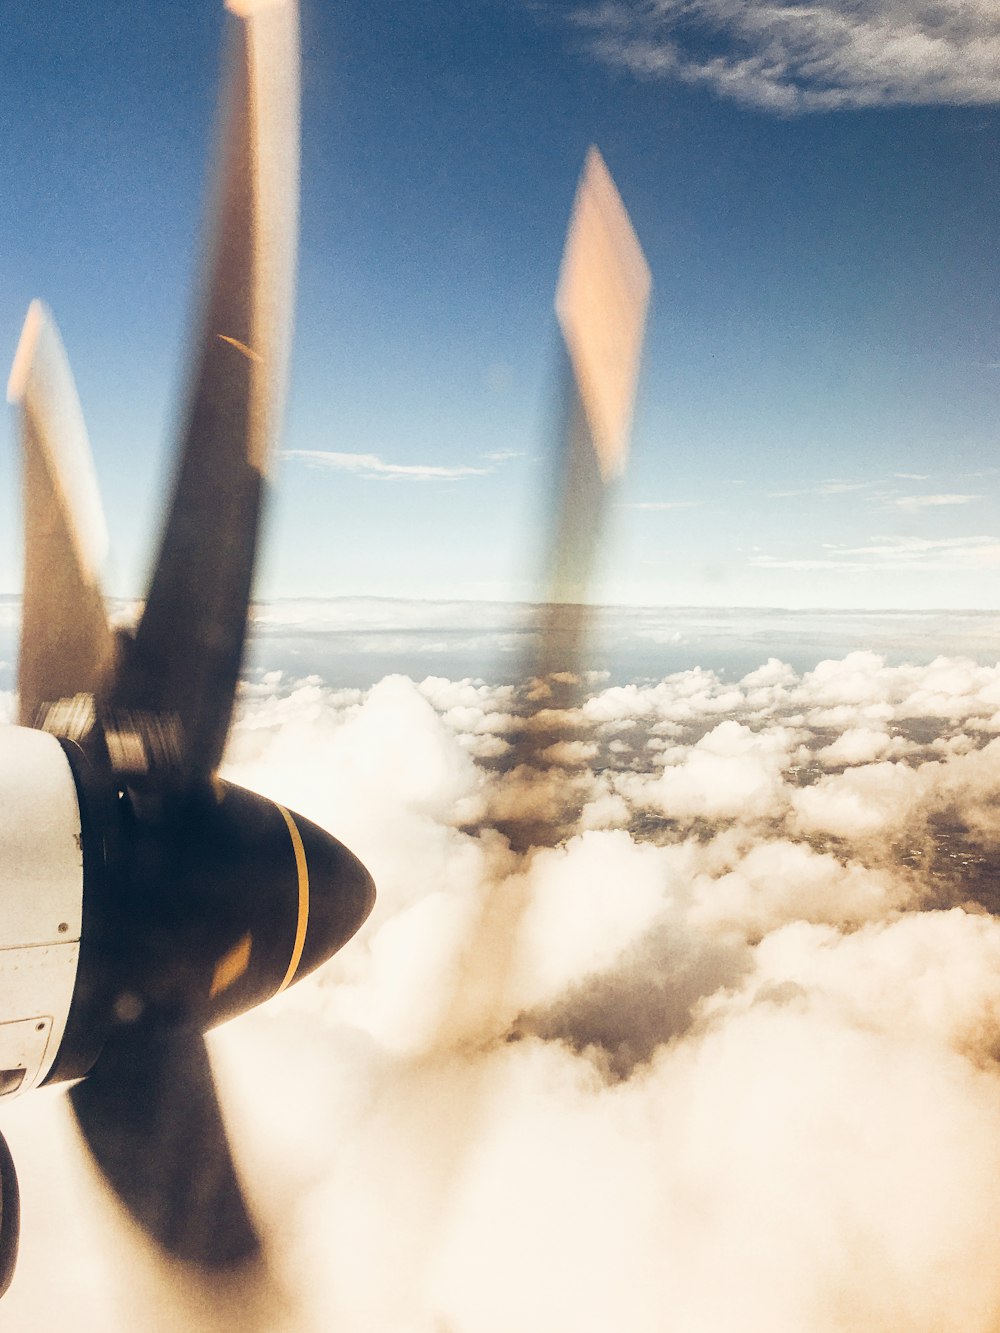 avion volant au-dessus des nuages pendant la journée